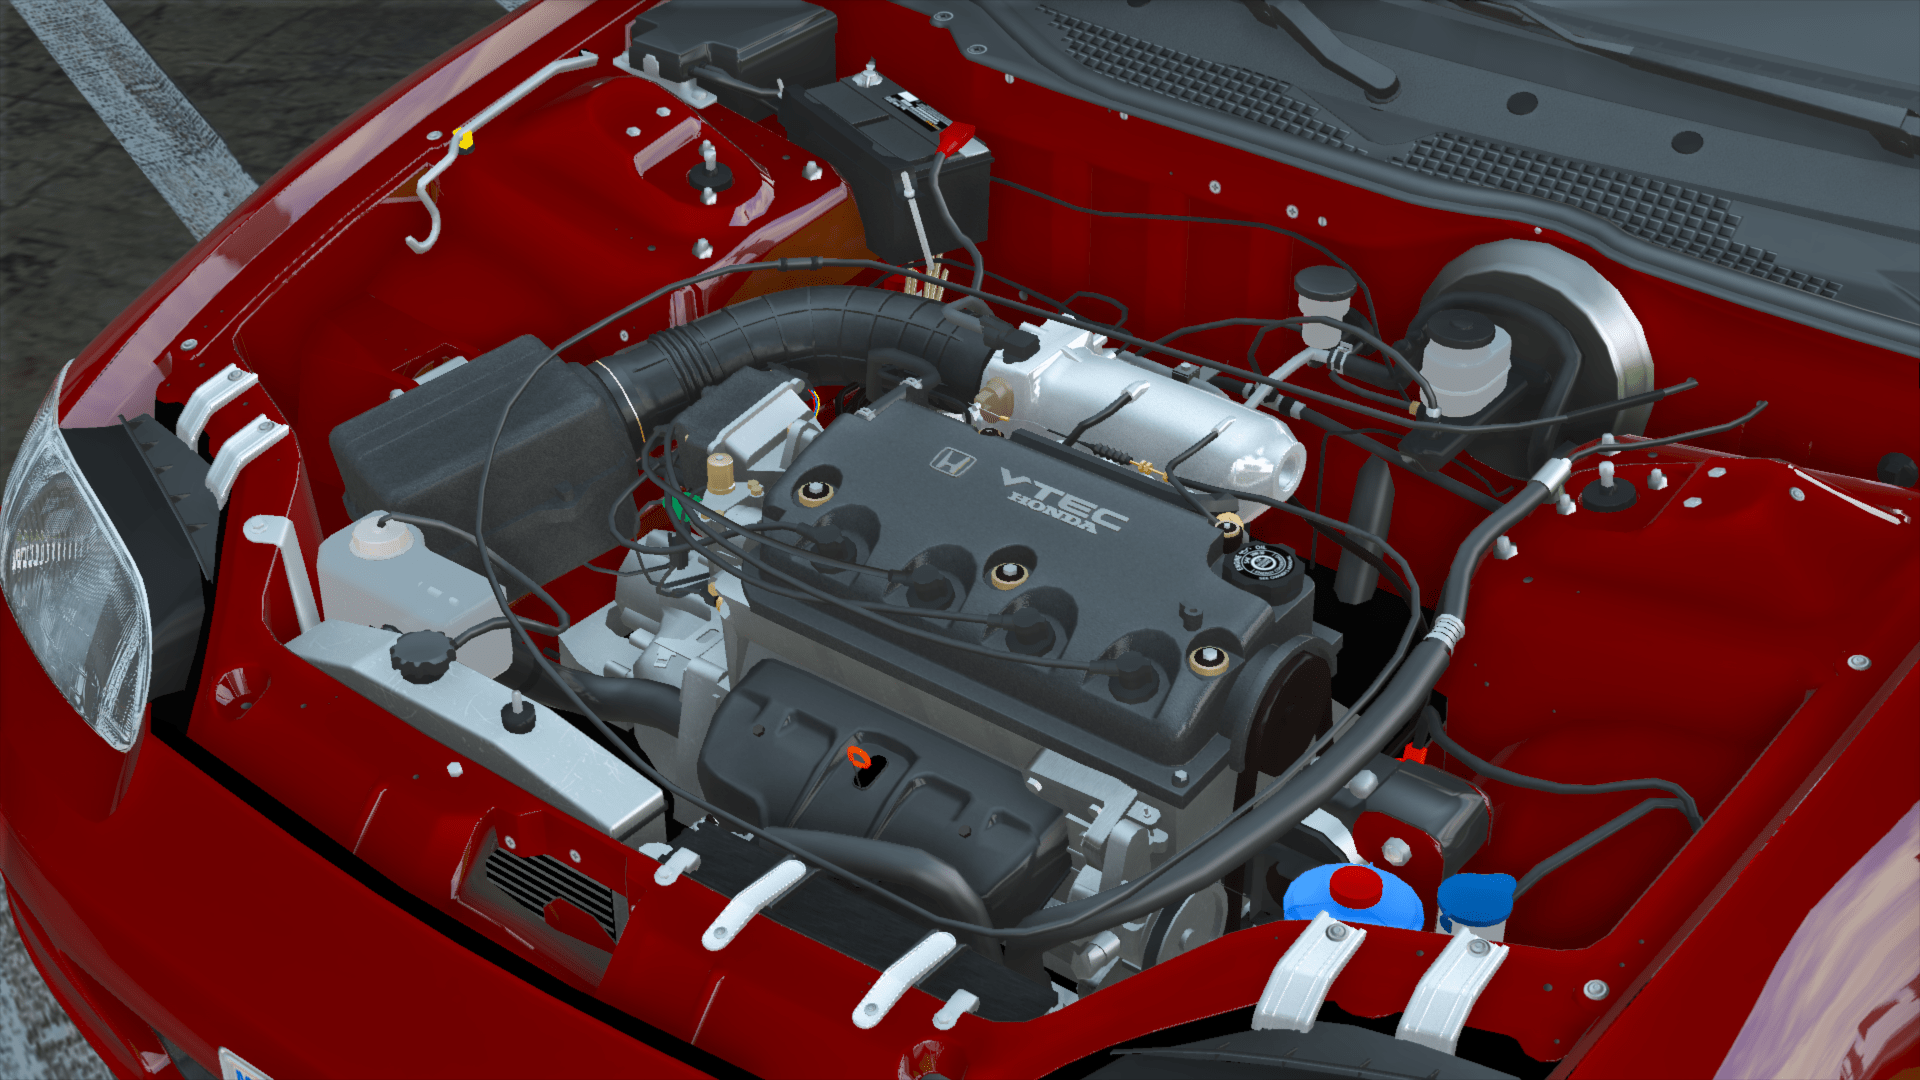 Honda Civic D16Z6 I4 Engine Sound [OIV Add On / FiveM | Sound] -  